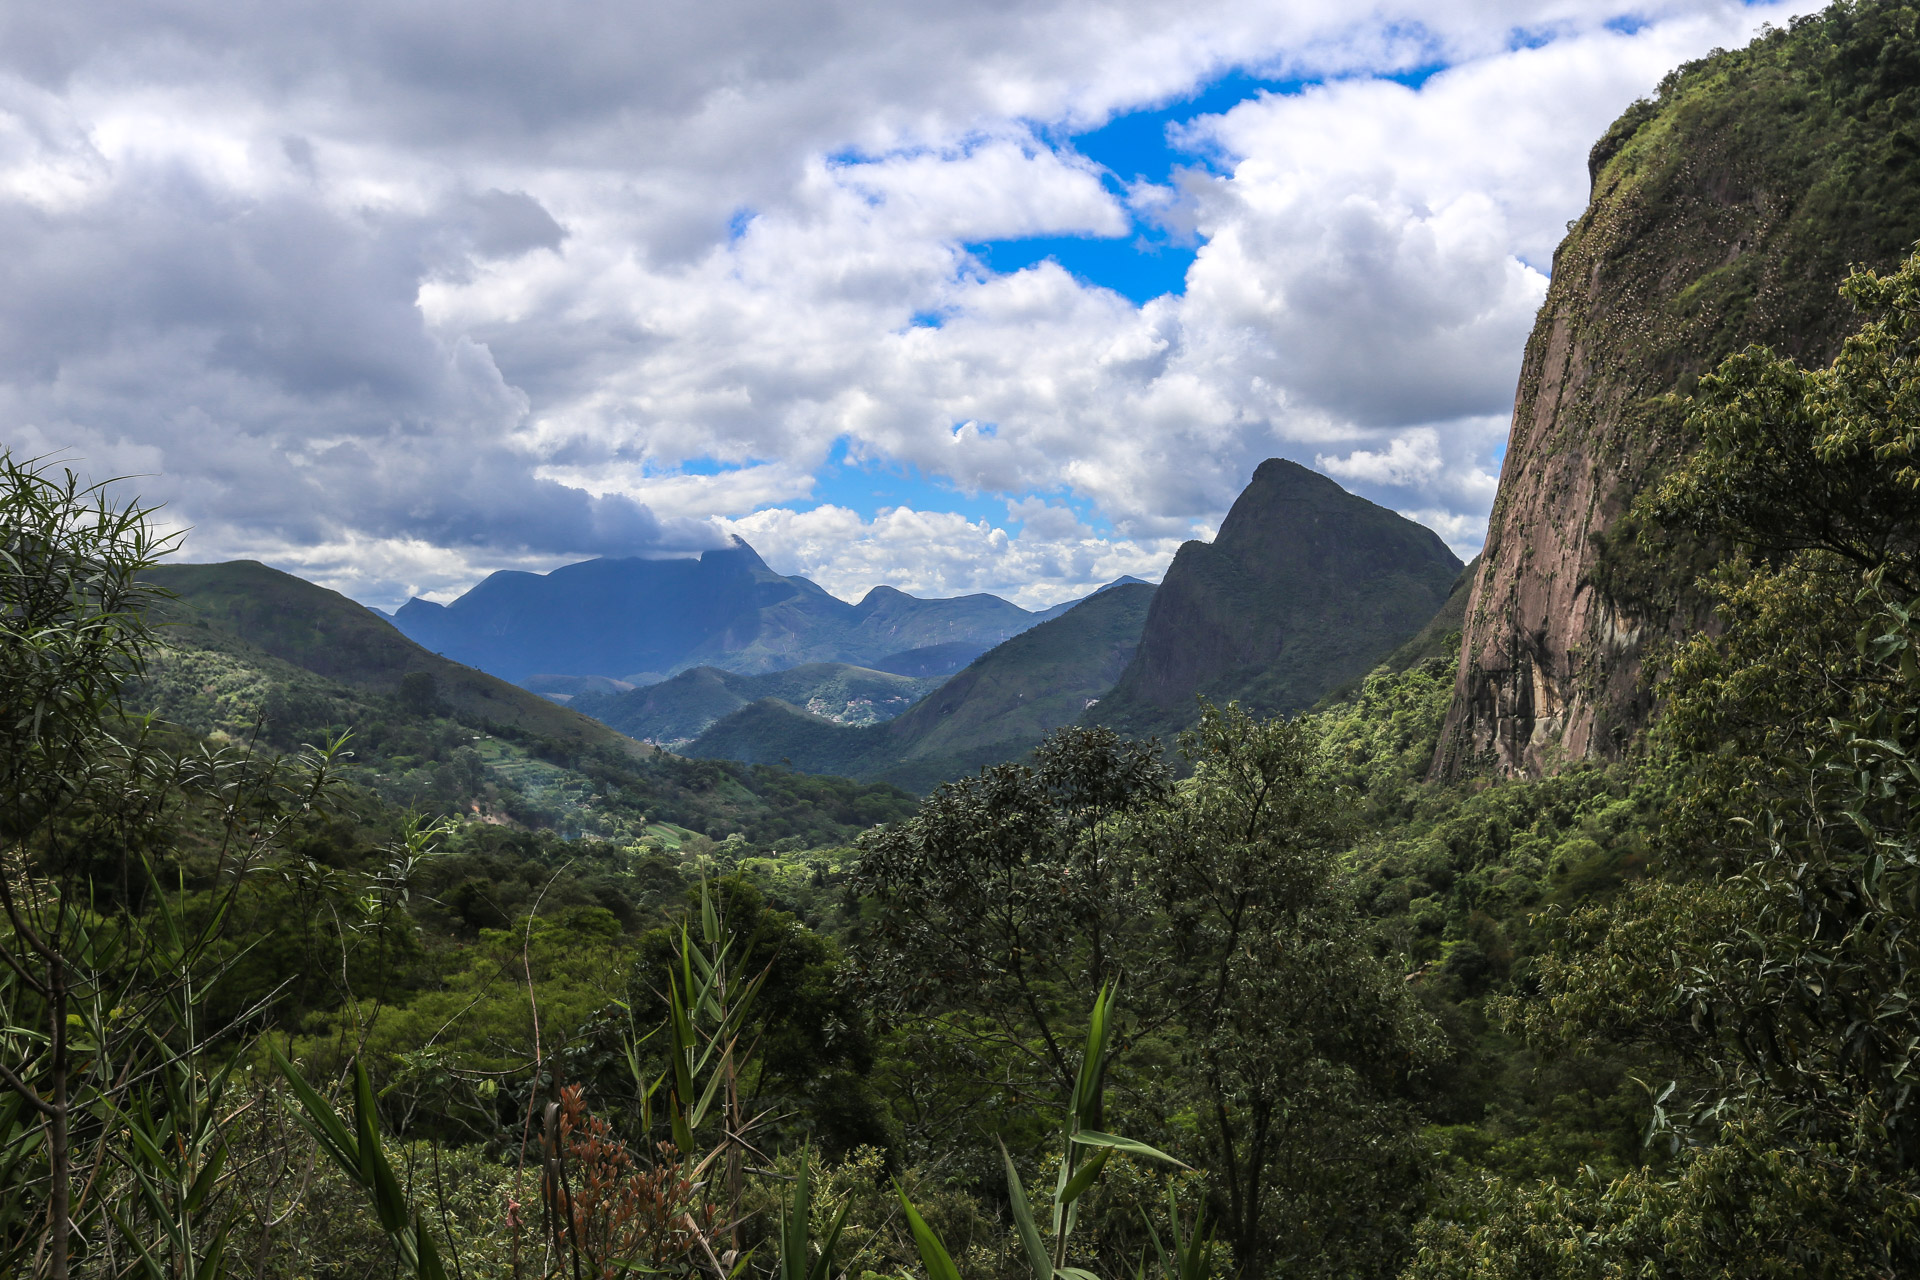 Paysage typique dans le Parc National de la Serra dos Orgãos